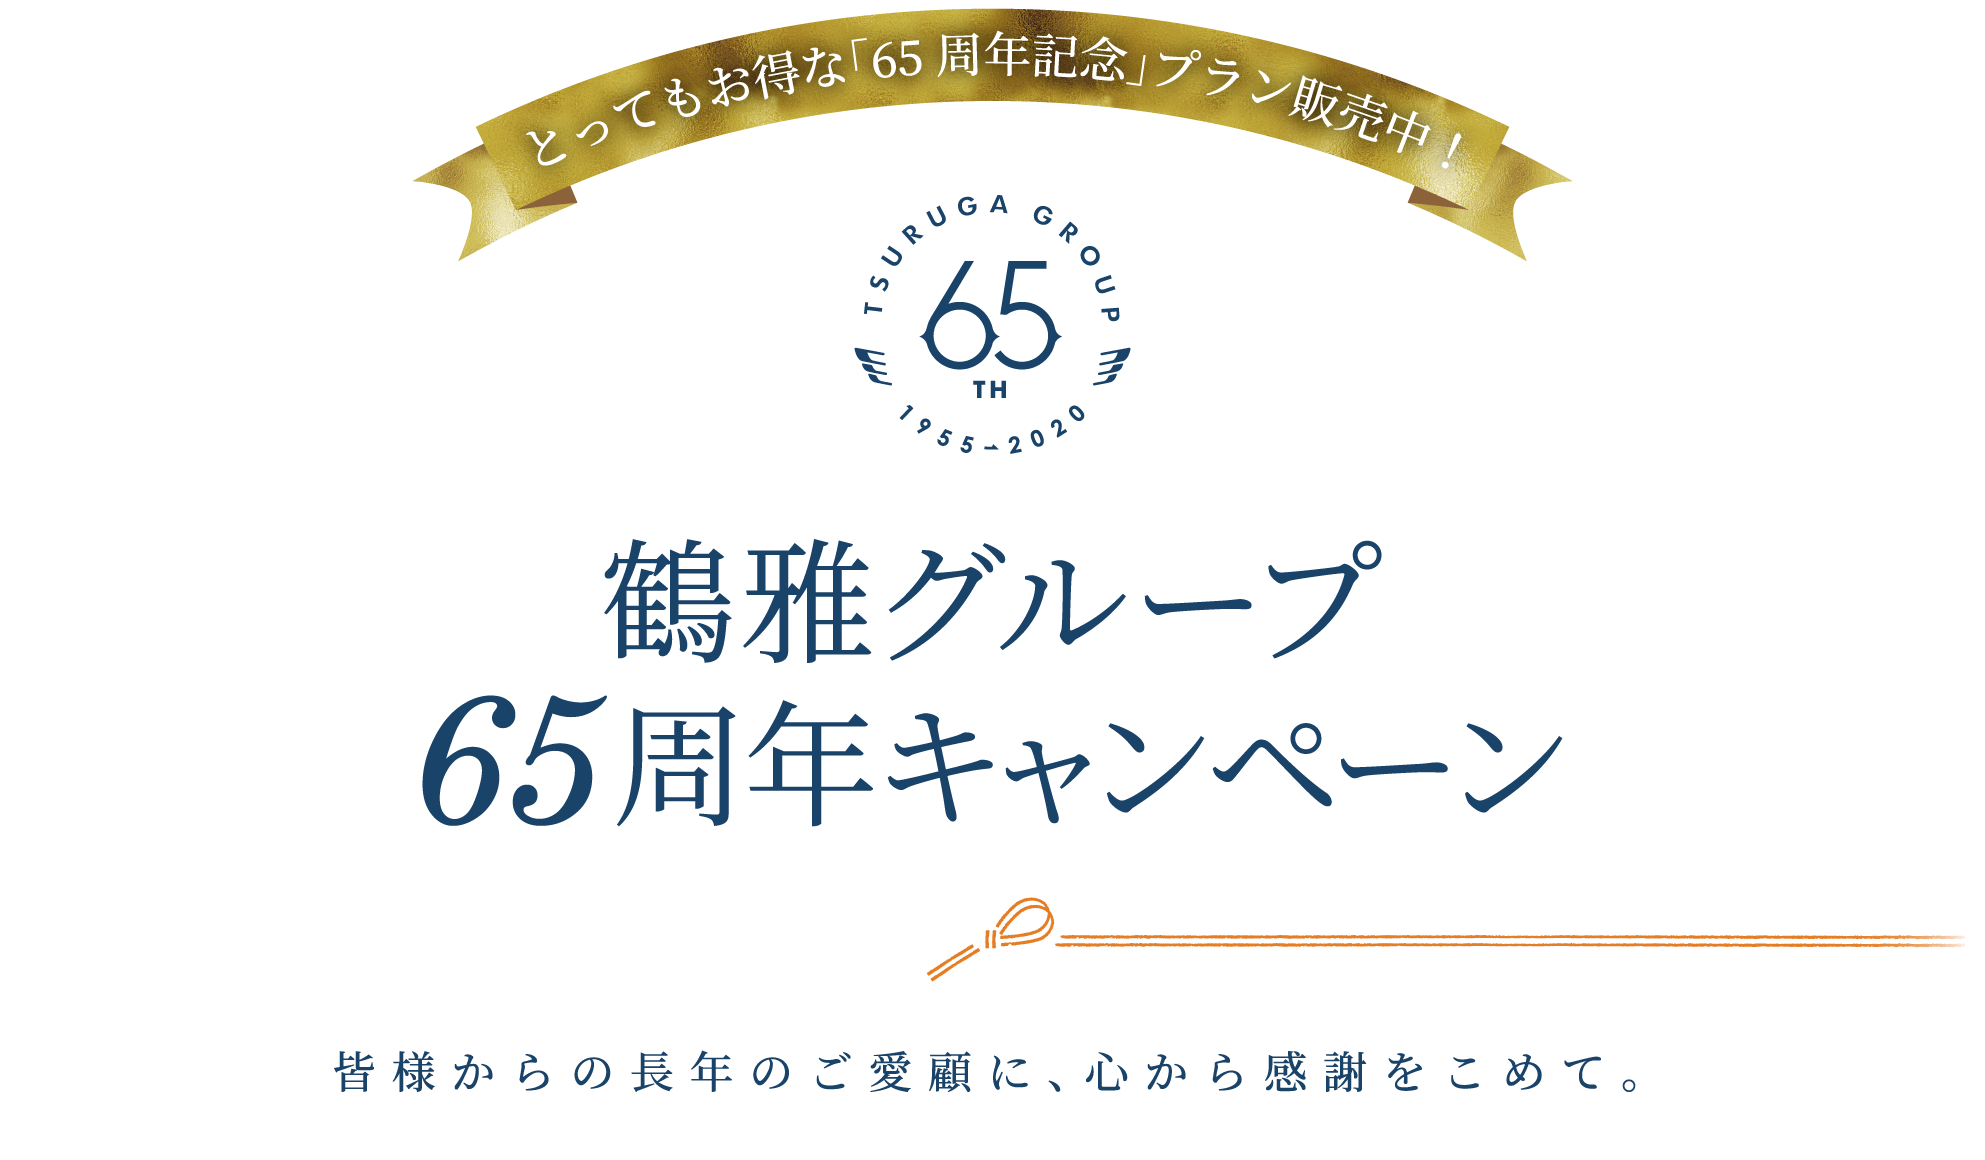 鶴雅グループ65周年キャンペーン